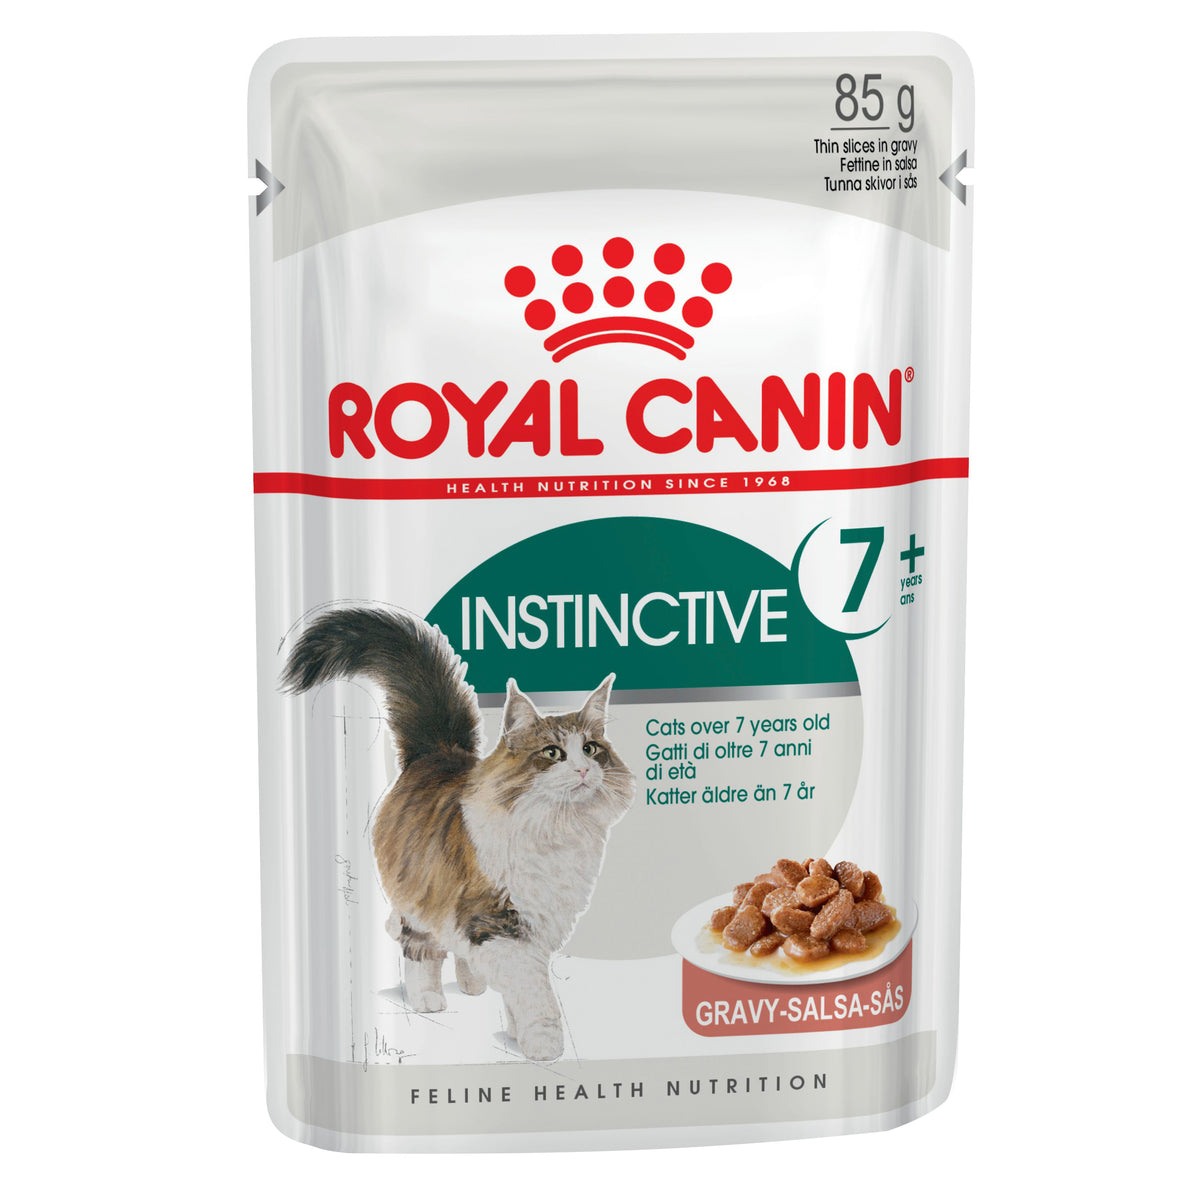 Royal Canin Instinctive 7 plus Gravy Pouch